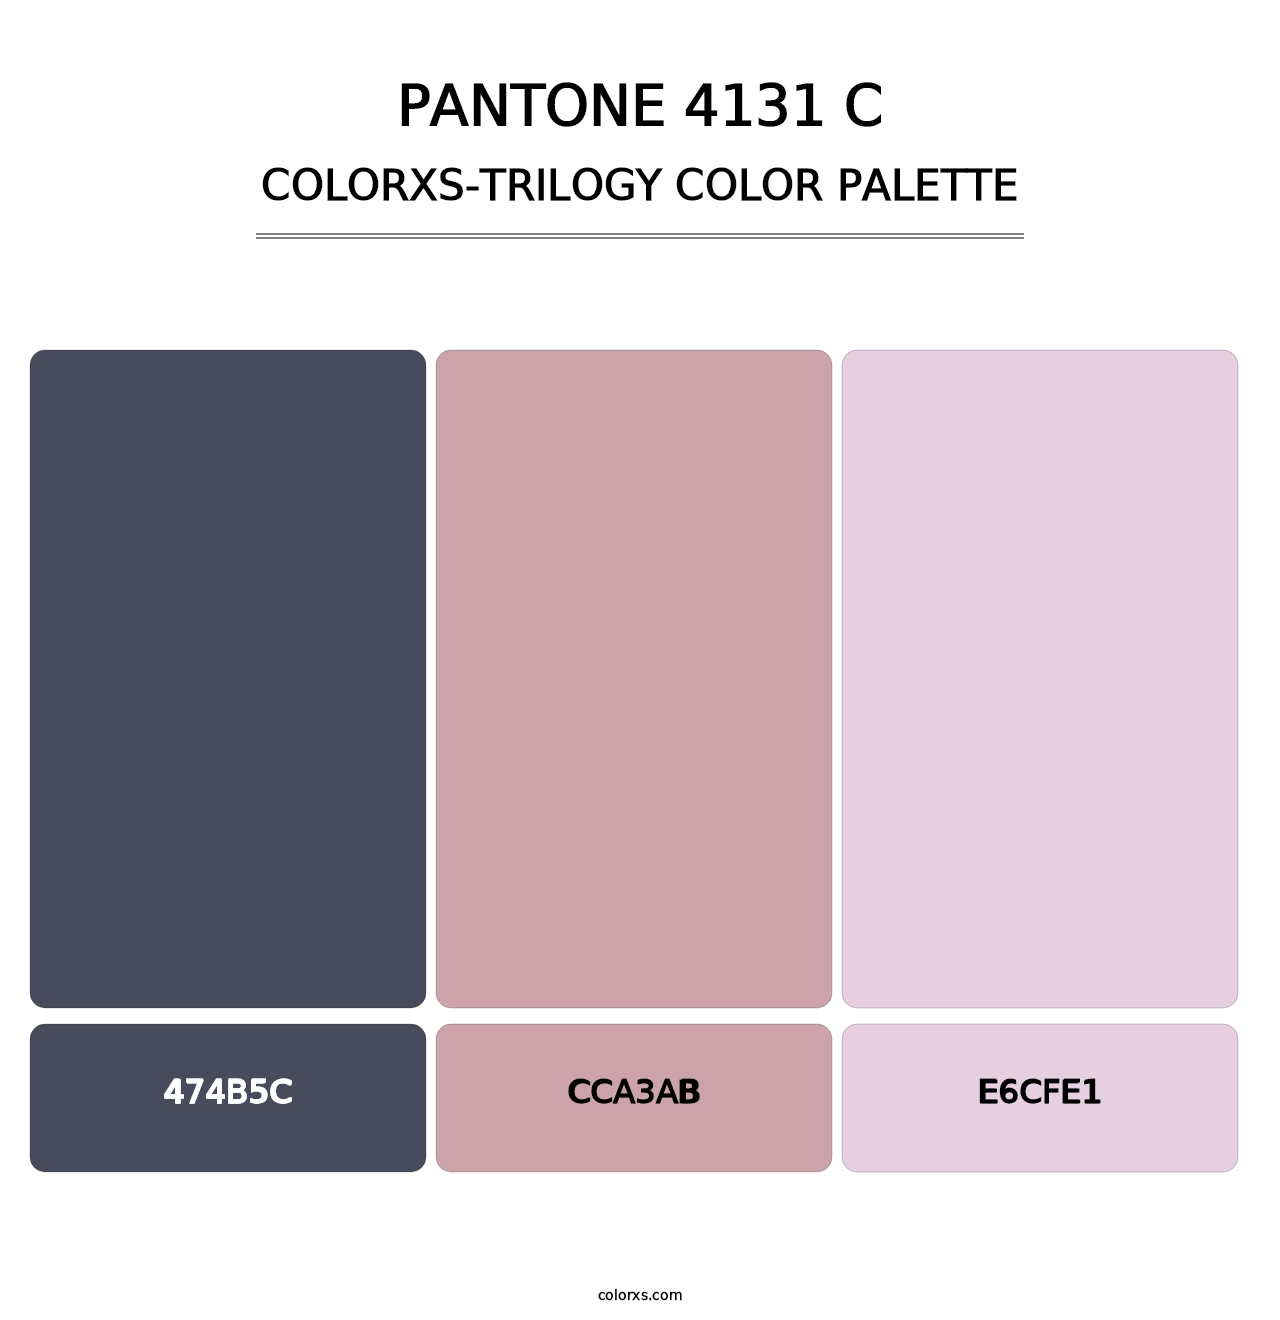 PANTONE 4131 C - Colorxs Trilogy Palette